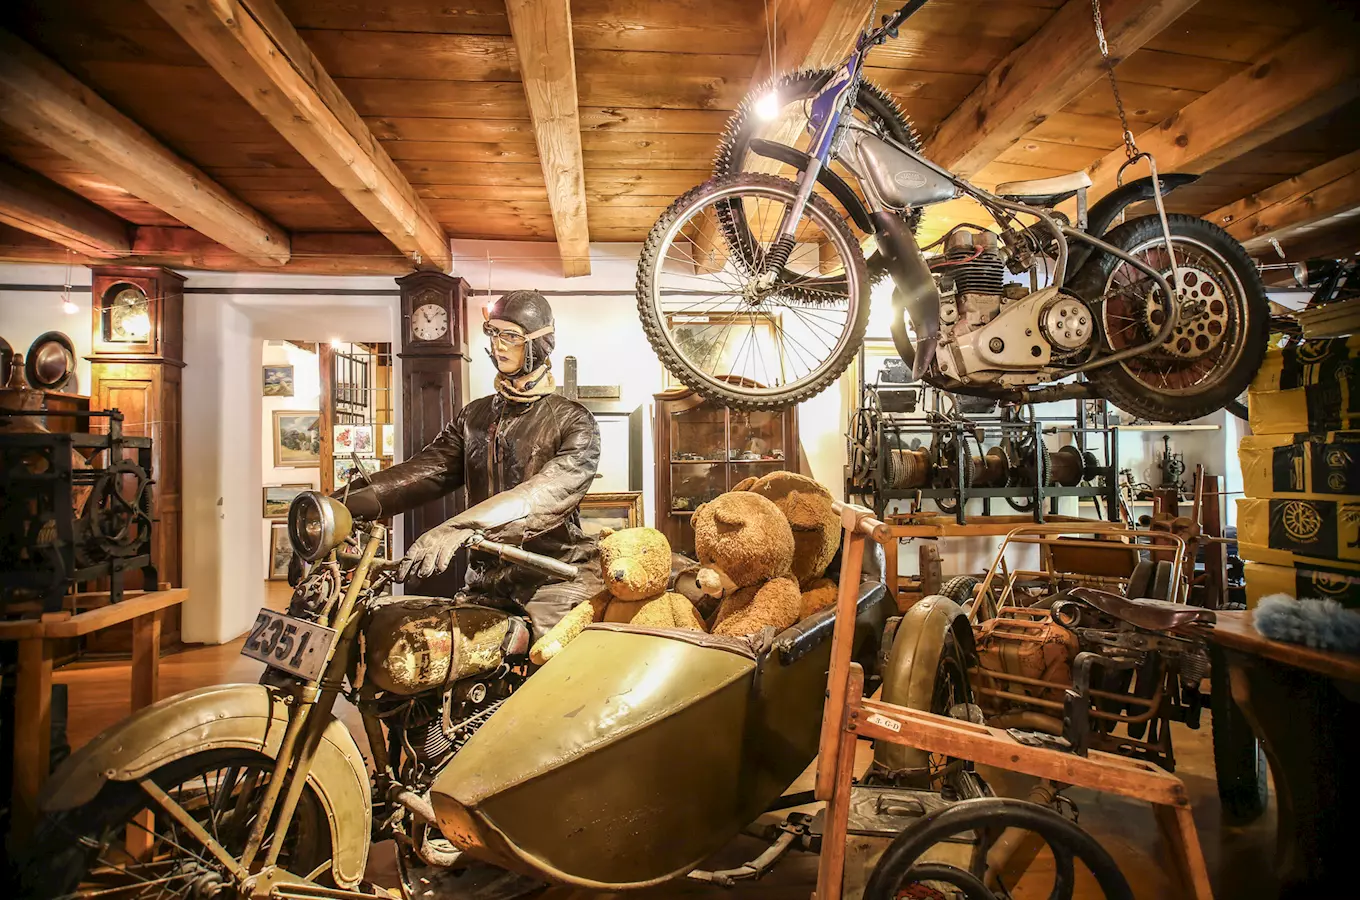 Muzeum historických motocyklů a prodejní galerie Krumlovský mlýn